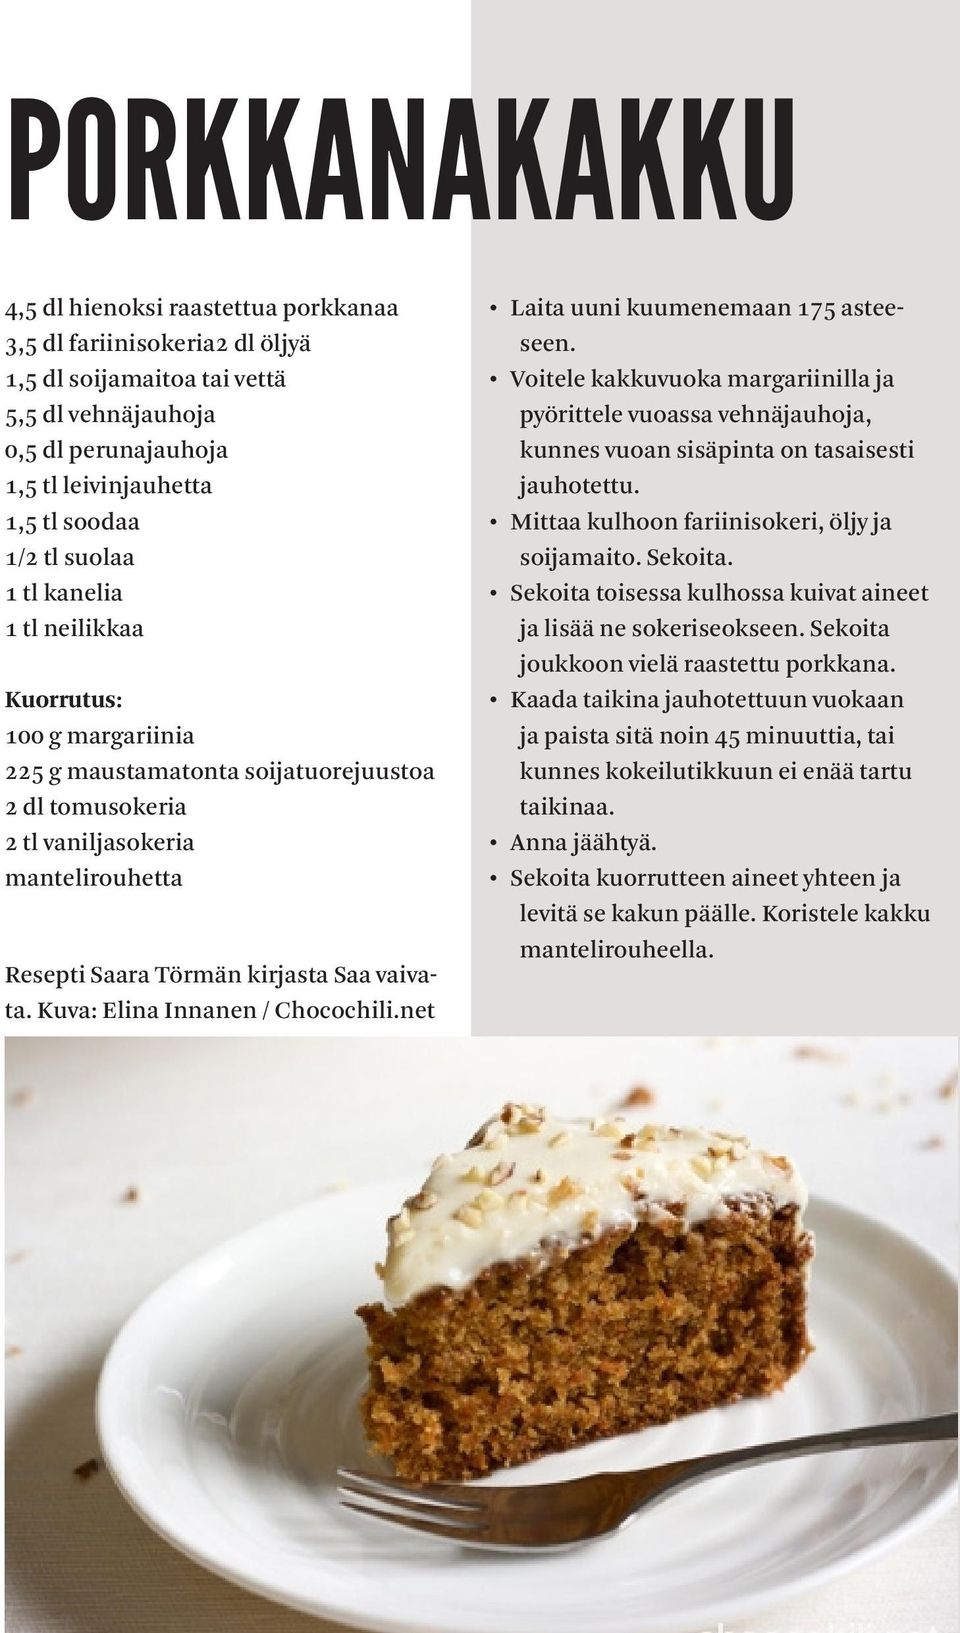 Kuva: Elina Innanen / Chocochili.net Laita uuni kuumenemaan 175 asteeseen. Voitele kakkuvuoka margariinilla ja pyörittele vuoassa vehnäjauhoja, kunnes vuoan sisäpinta on tasaisesti jauhotettu.